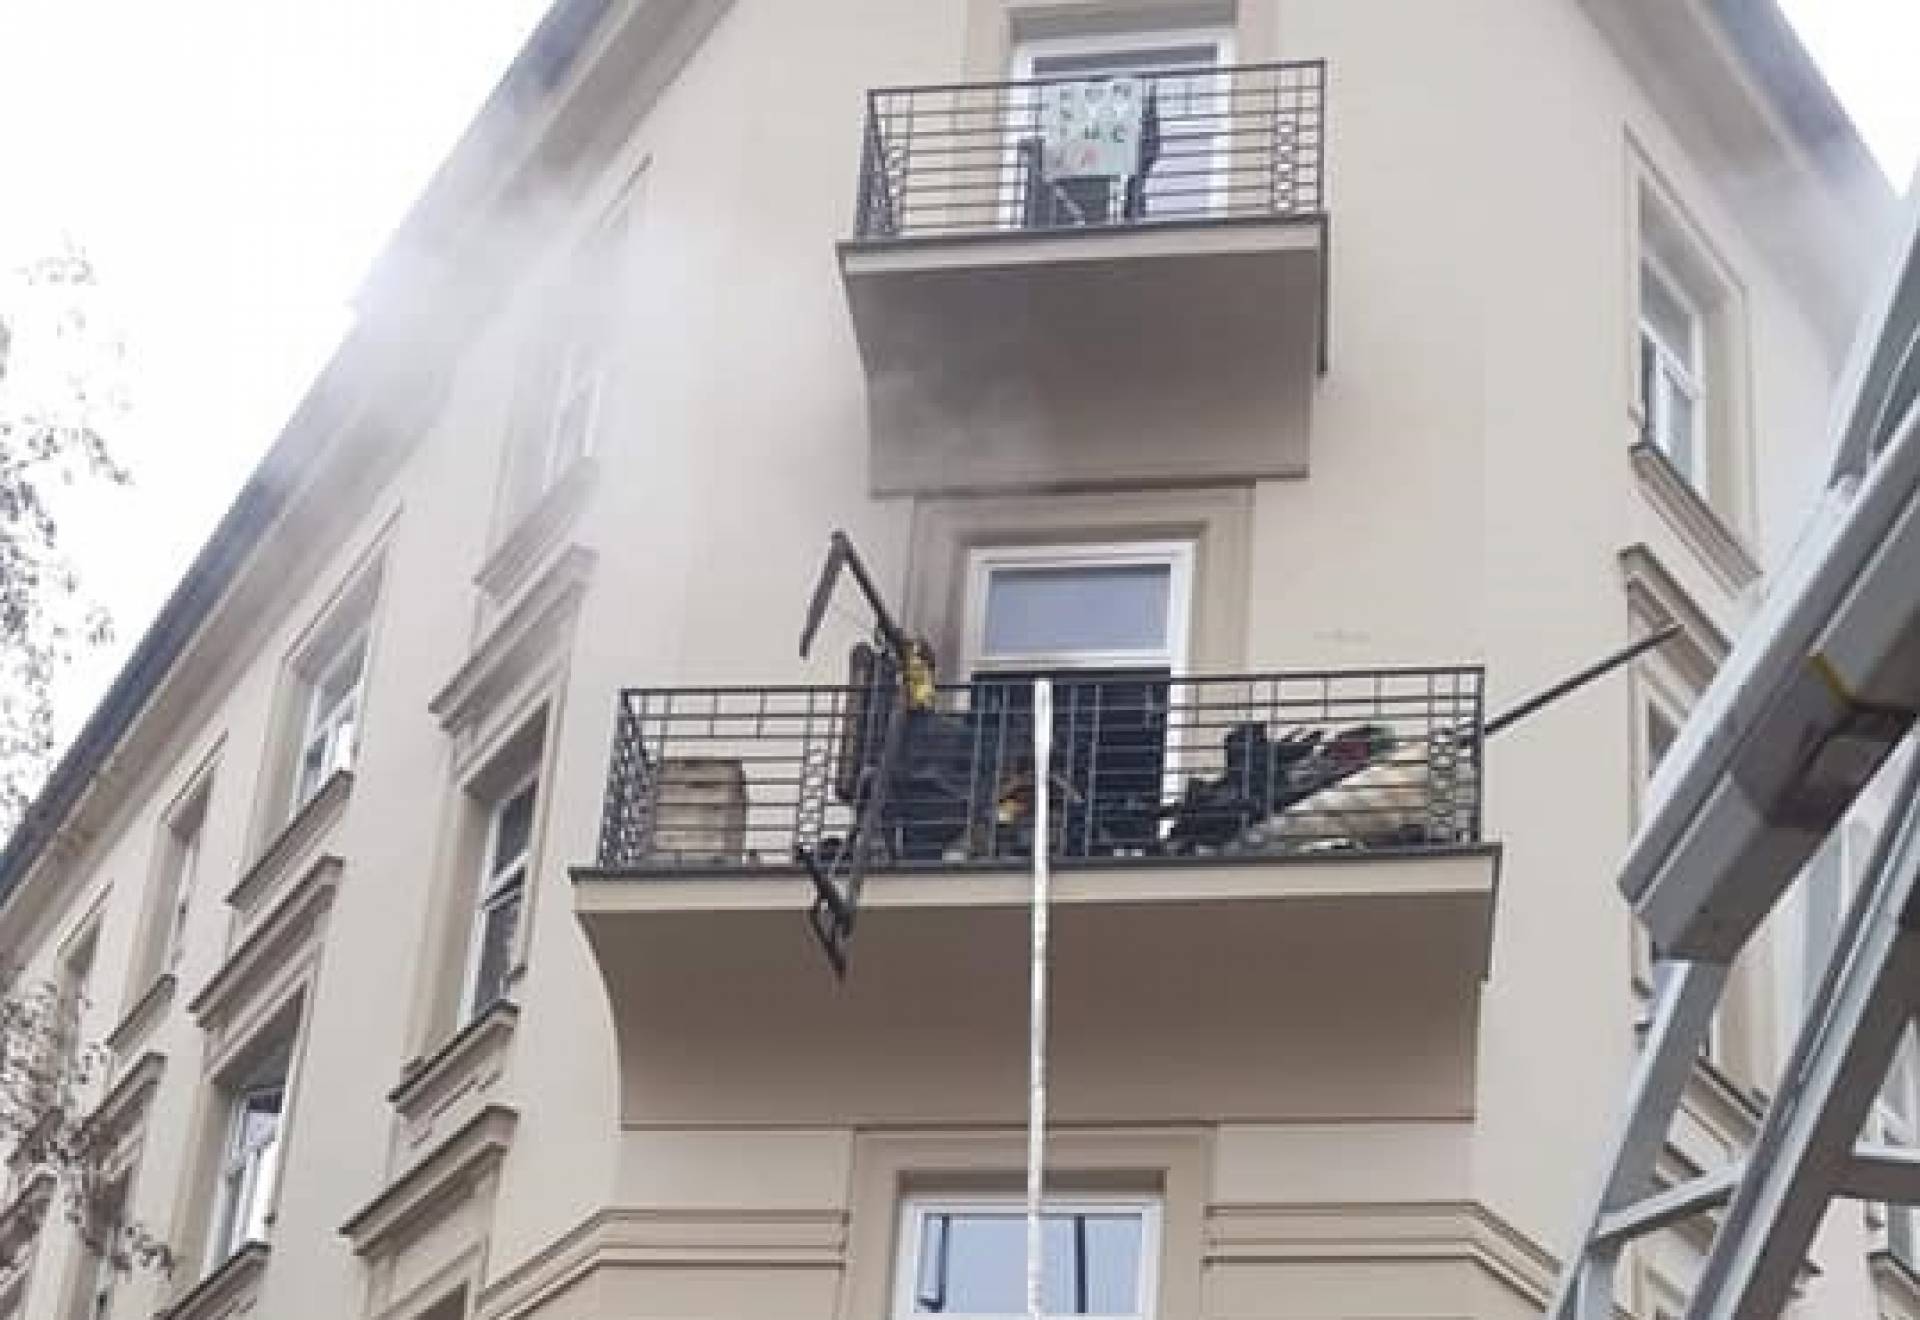 OD WAS: Pożar mieszkania przy ulicy Smoleńsk